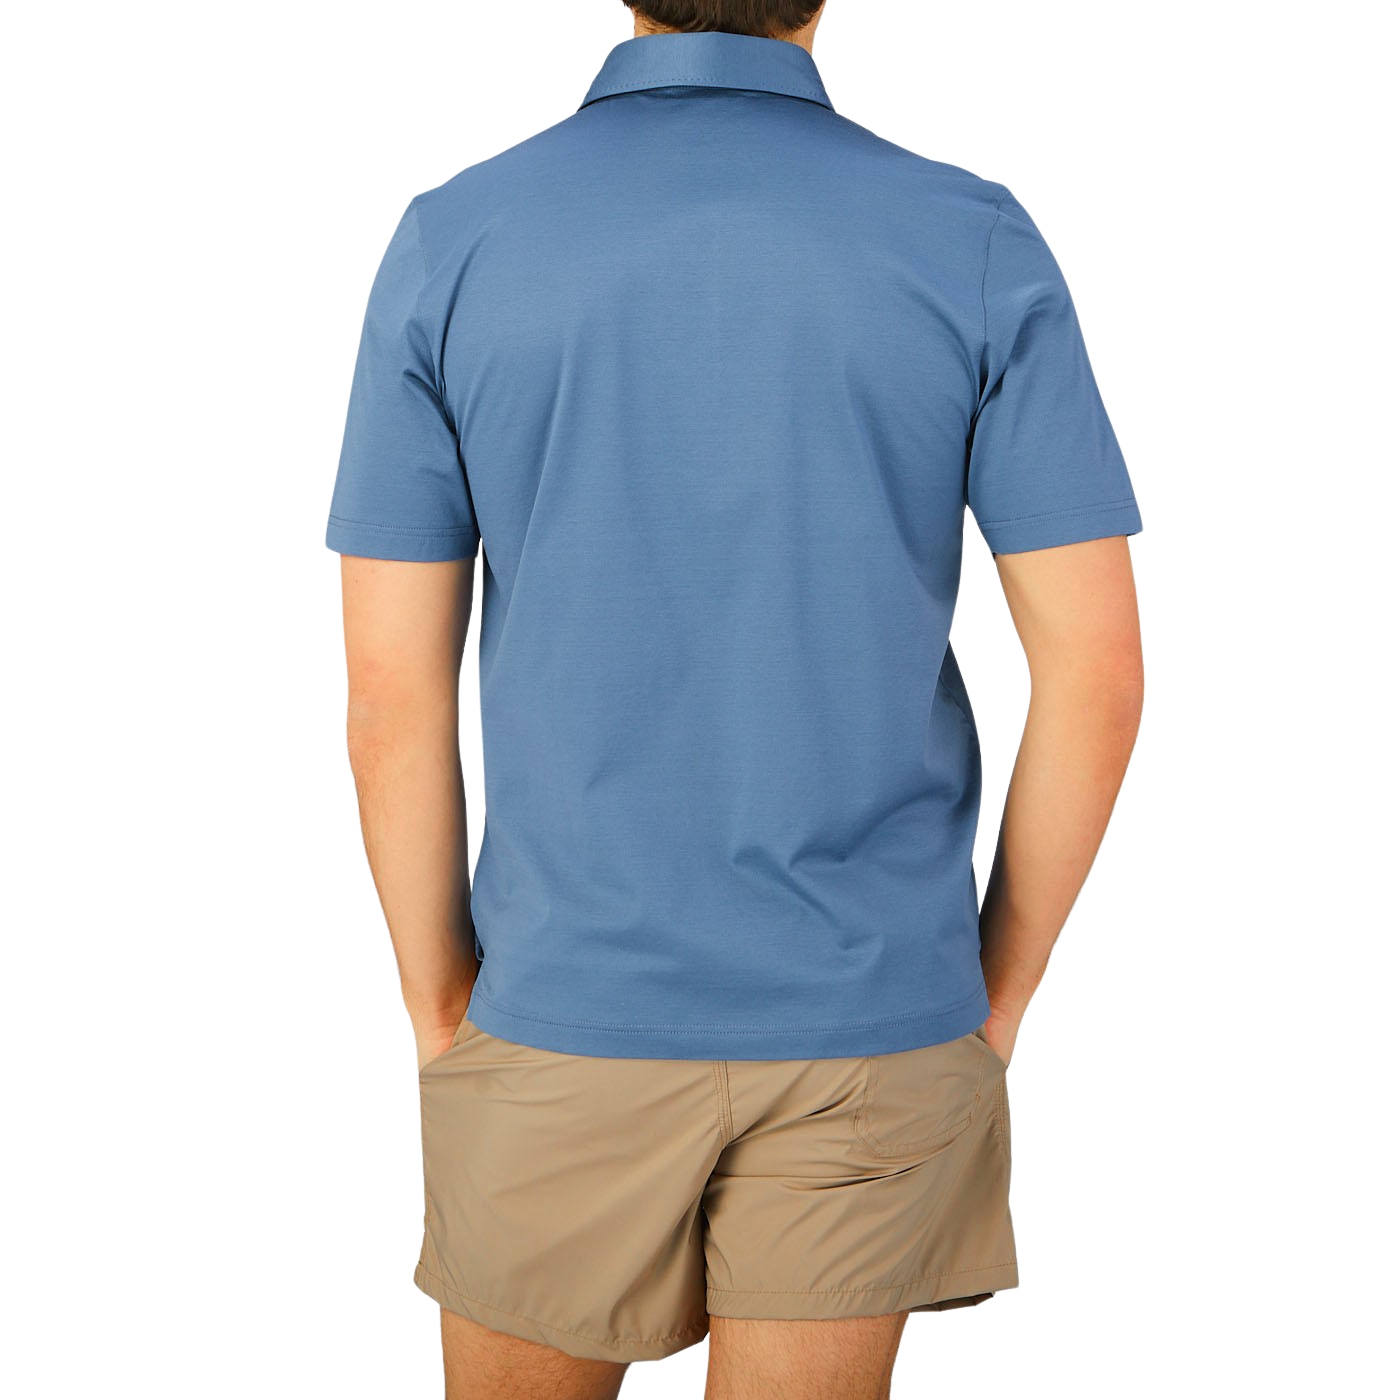 A man in a Dark Blue Cotton Filo Scozia Polo Shirt by Gran Sasso.